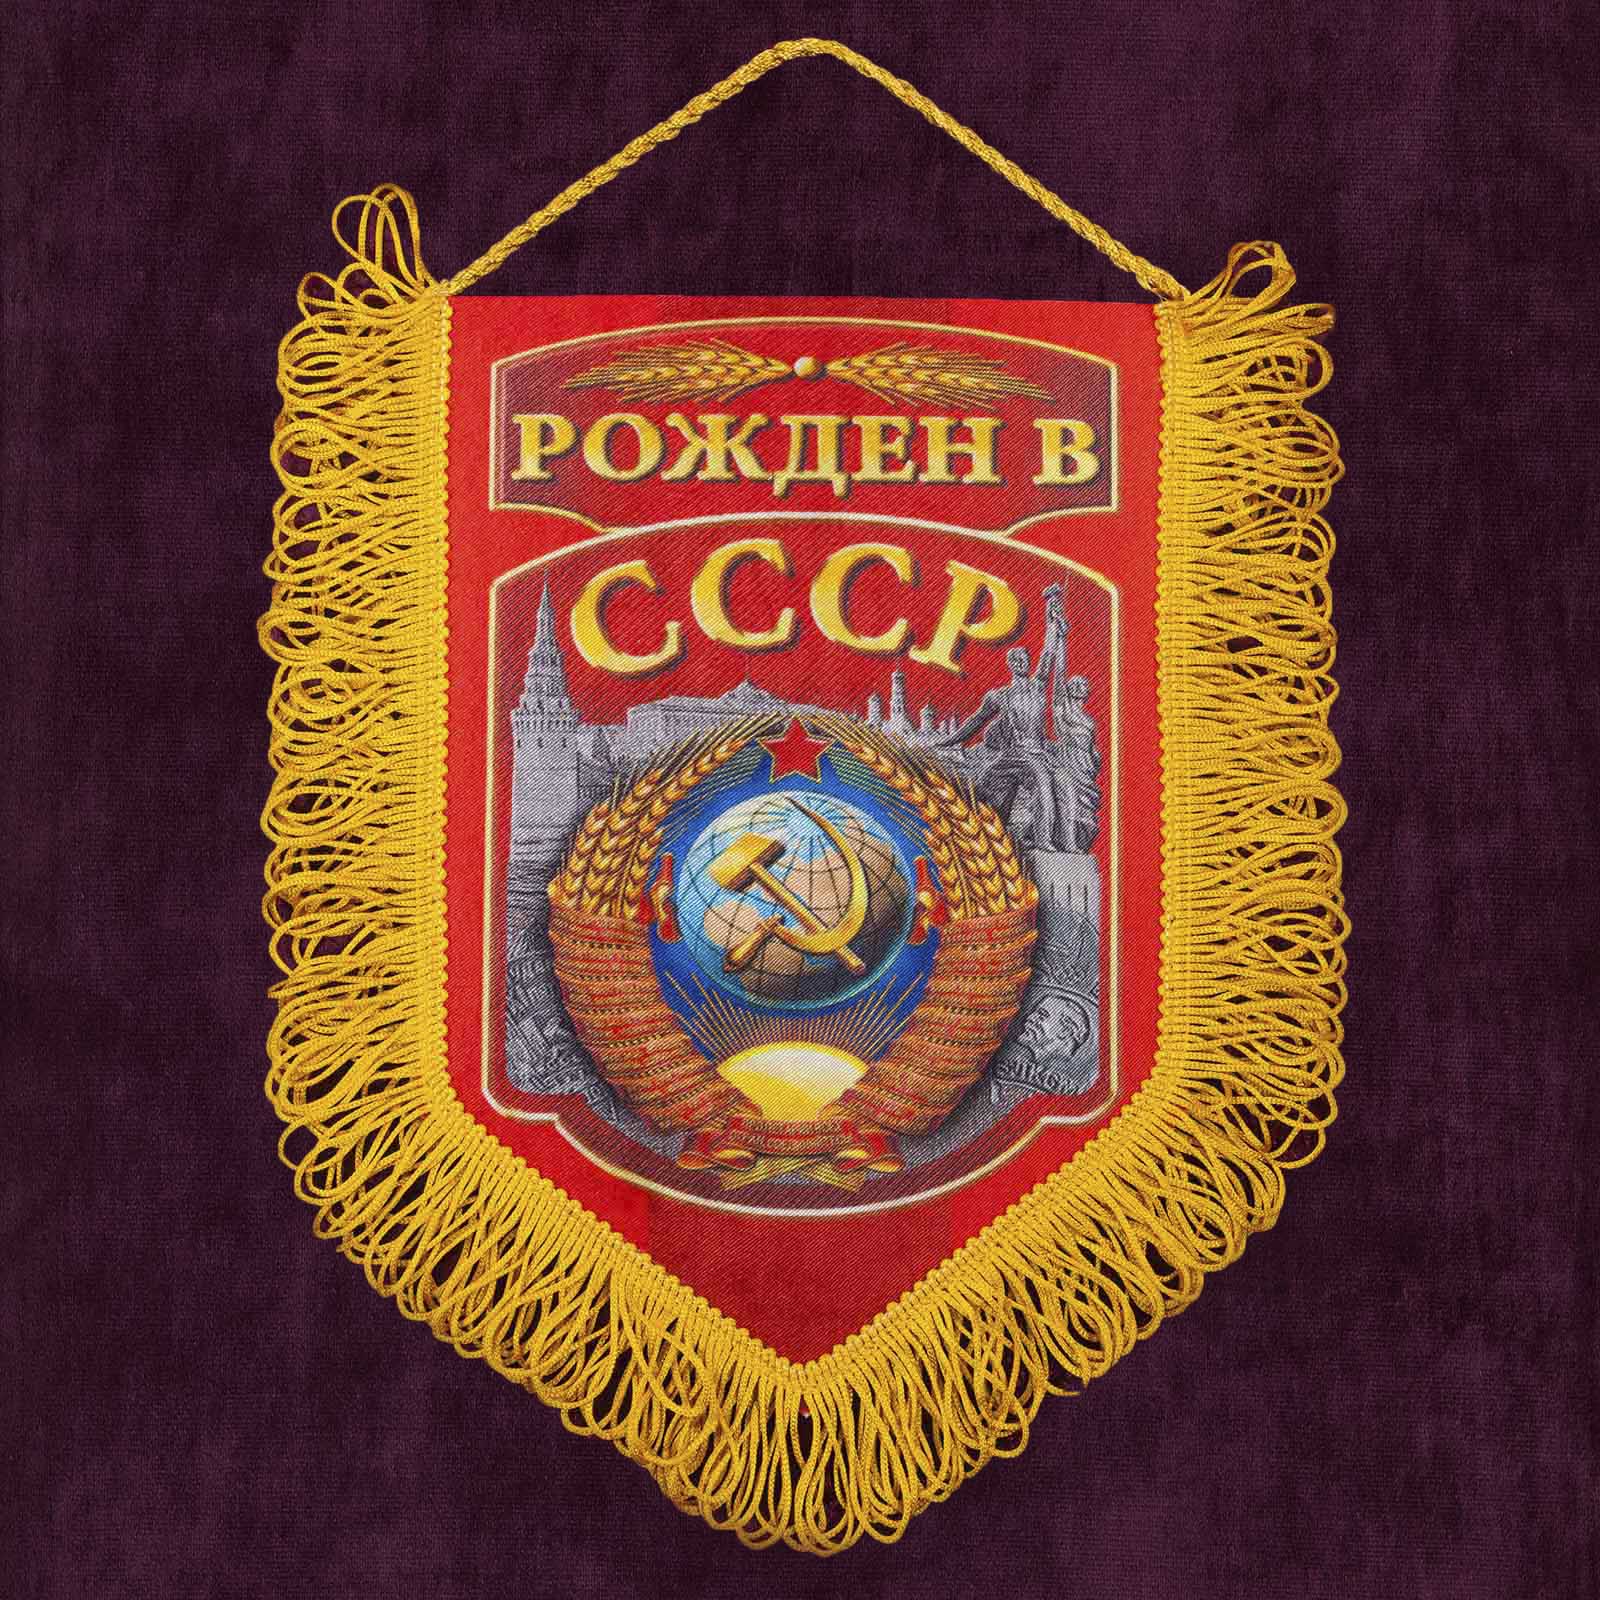 Купить сувенирный вымпел "Рожден в СССР" недорого